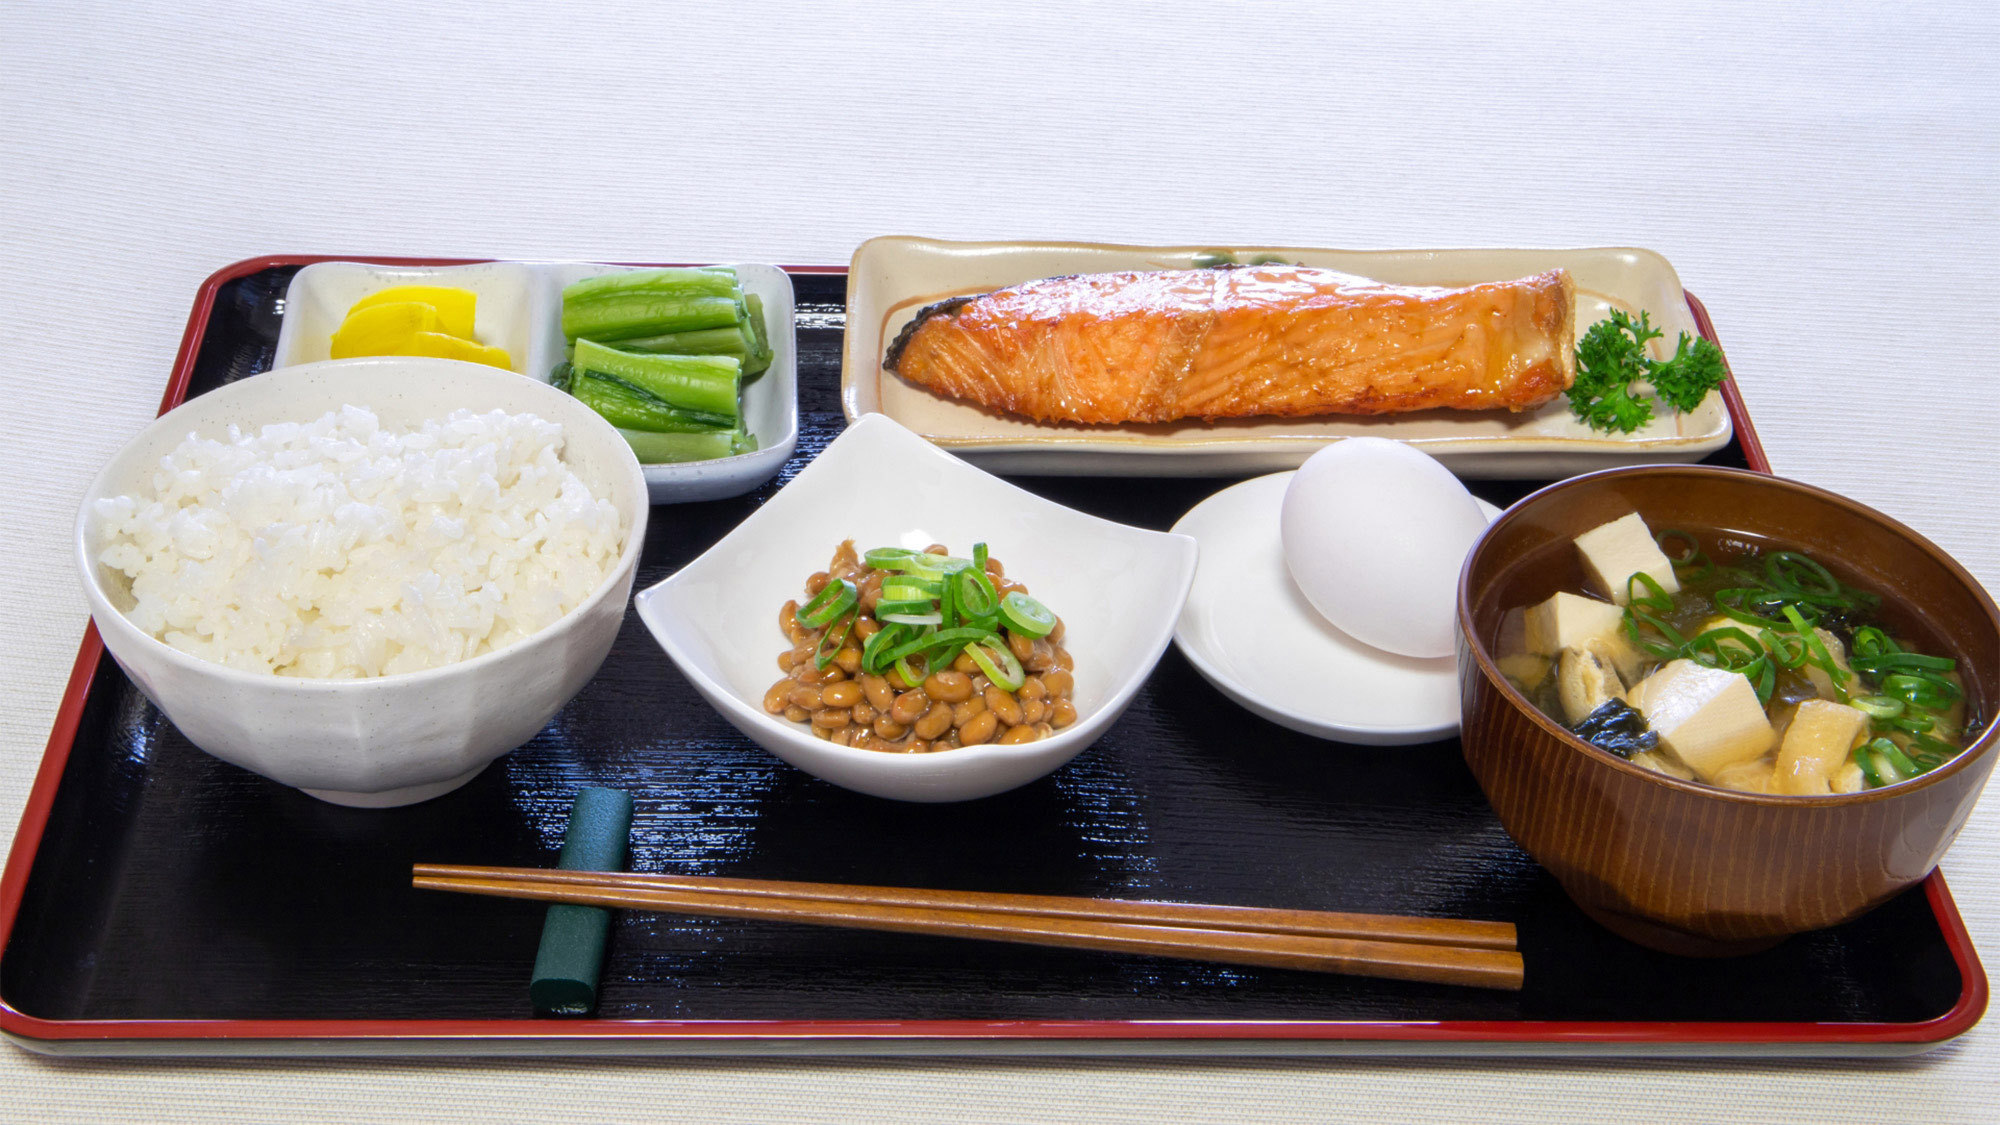 ・【朝食一例】味噌汁・納豆・鮭安心の朝ごはんです。